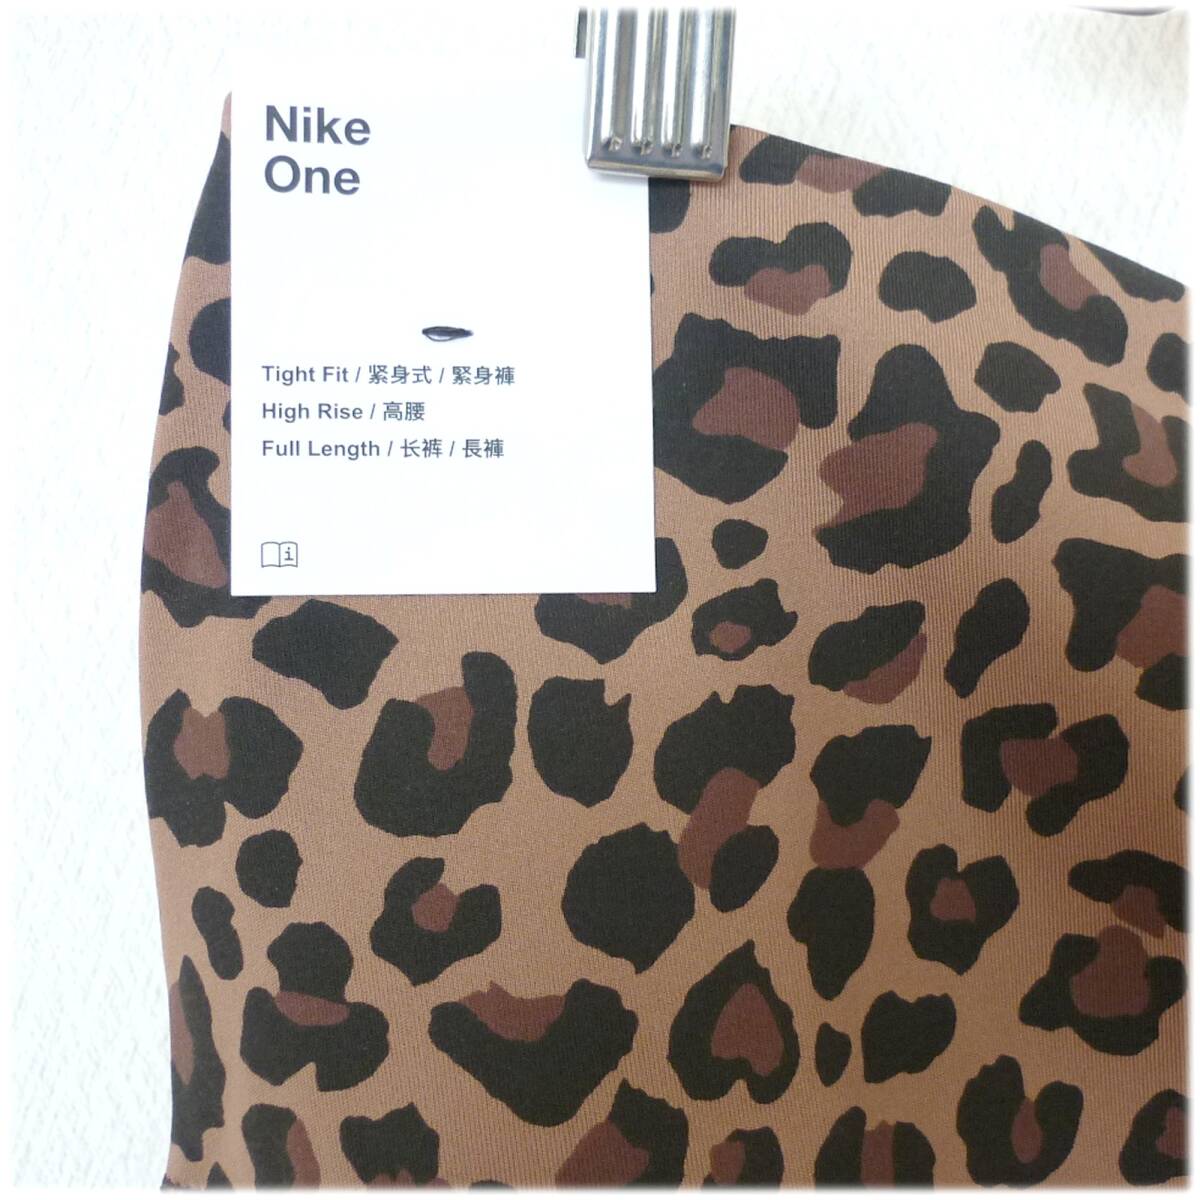  обычная цена 8250 иен новый товар L*NIKE Nike фитнес 50 высокий laiz леггинсы длинный трико леггинсы / леопардовая расцветка / животное рисунок 